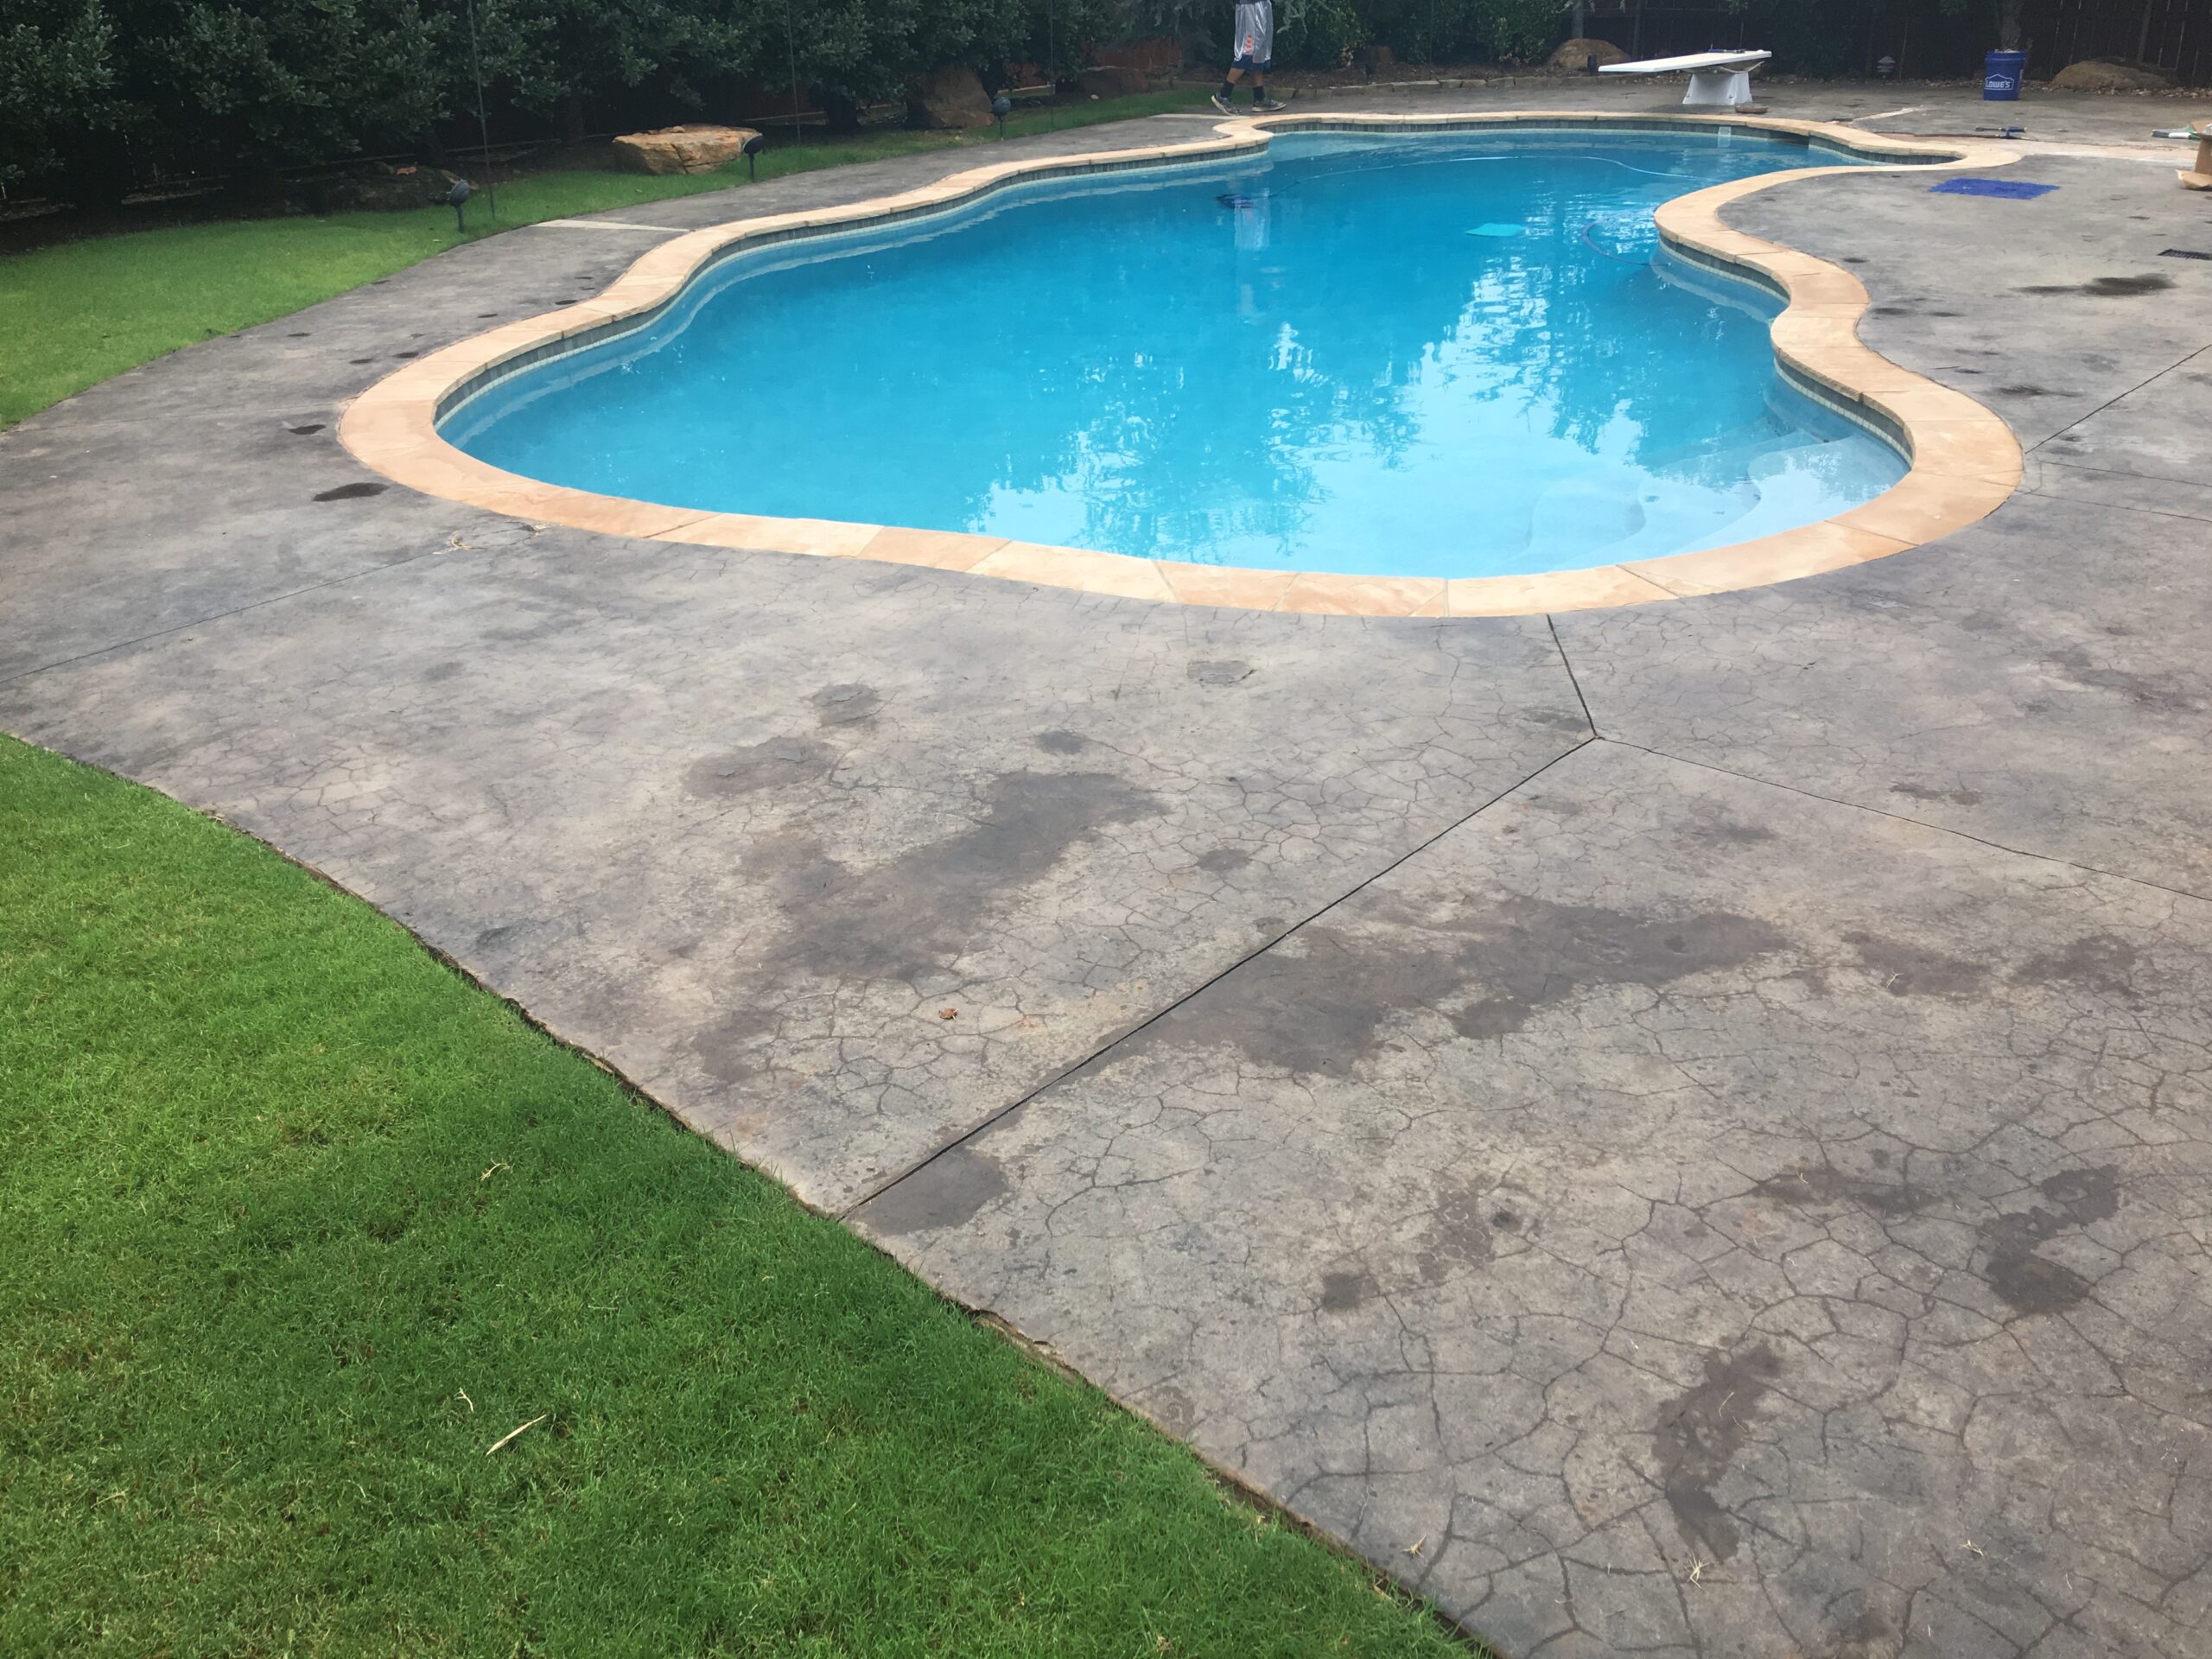 Decolored Concrete Pool Deck